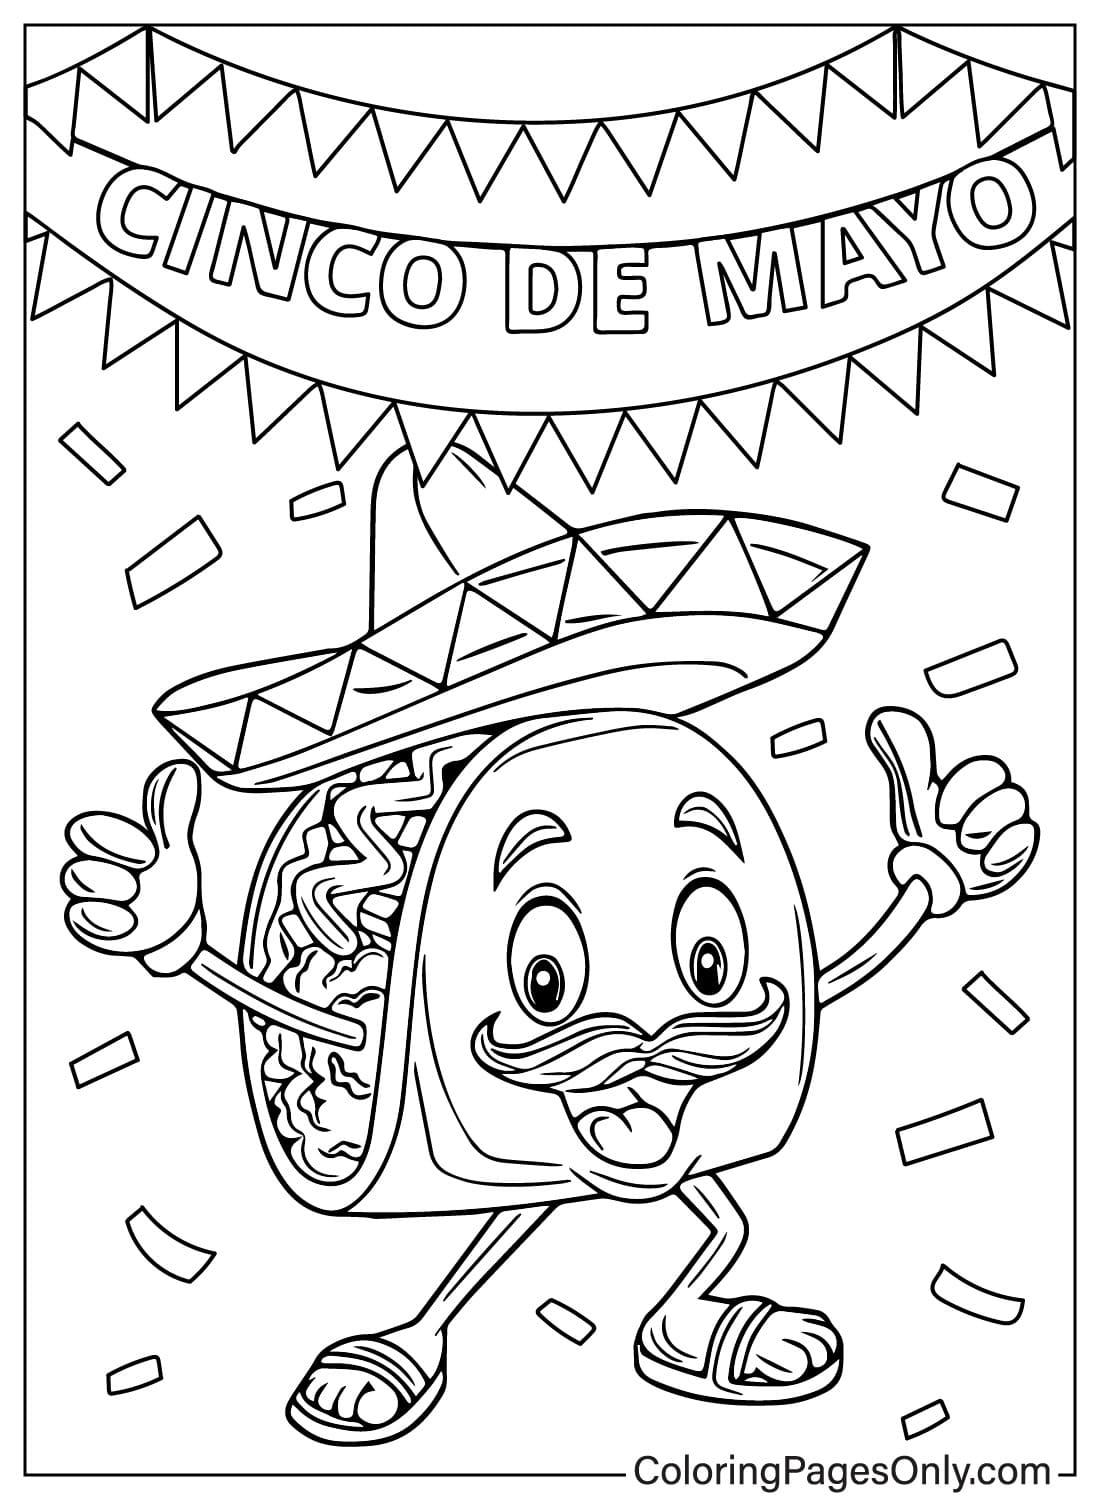 Taco mexikanisches Essen von Cinco De Mayo